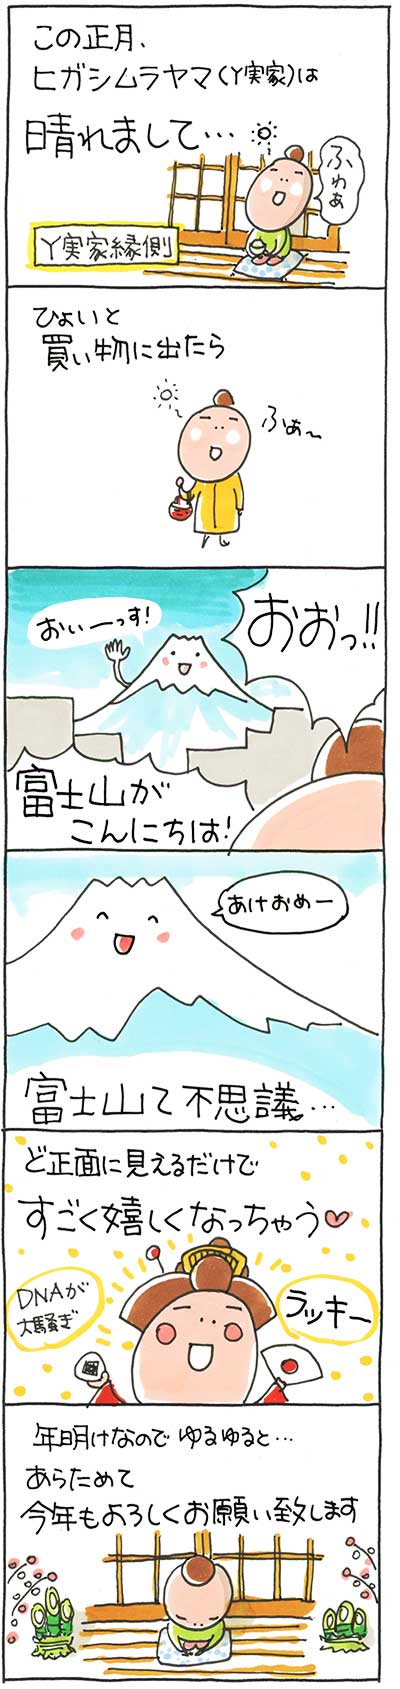 160105富士山